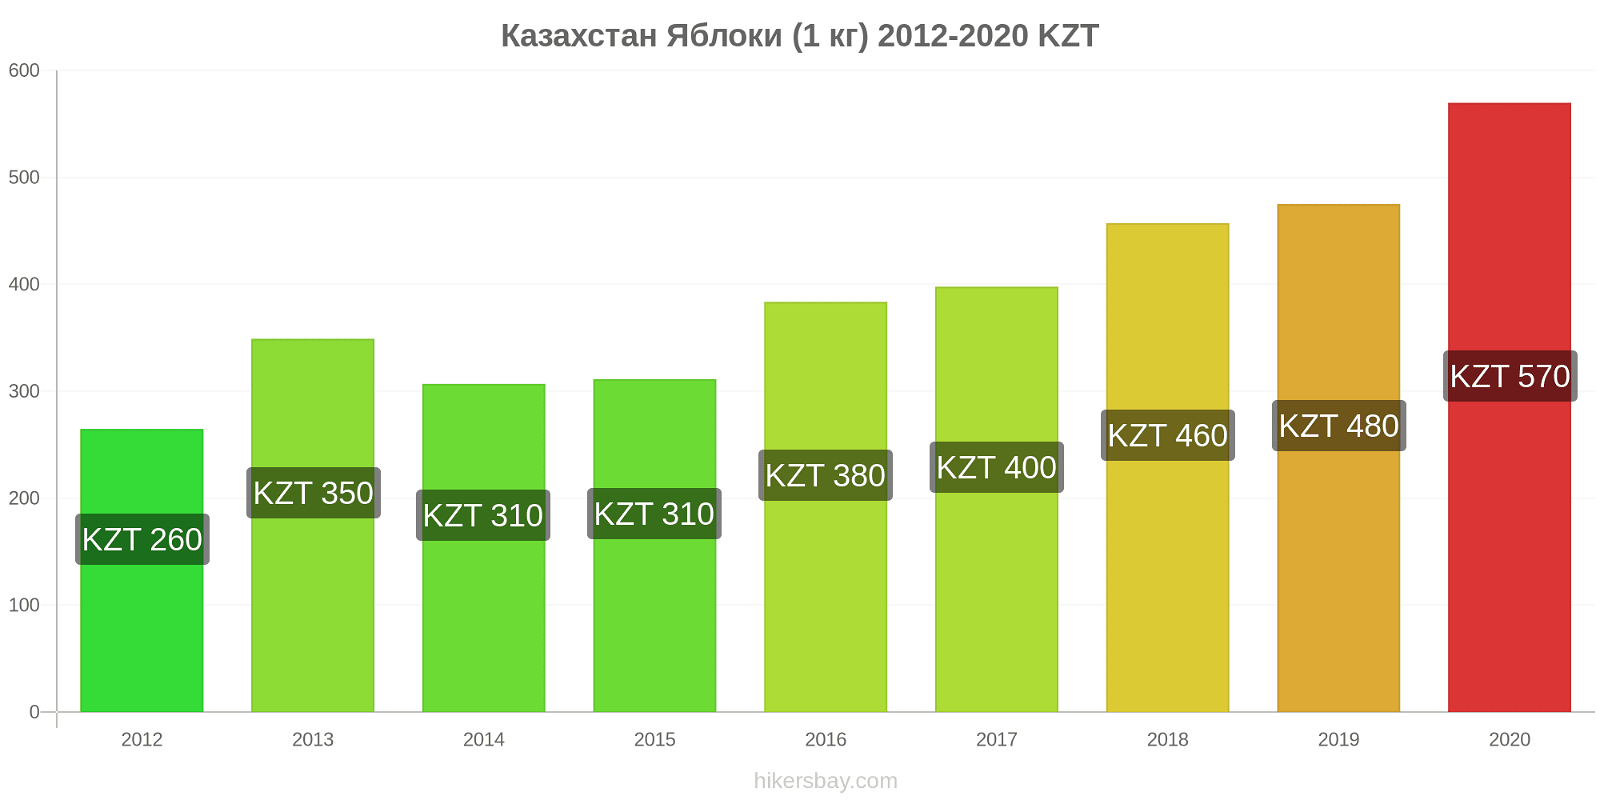 Казахстан изменения цен Яблоки (1 кг) hikersbay.com